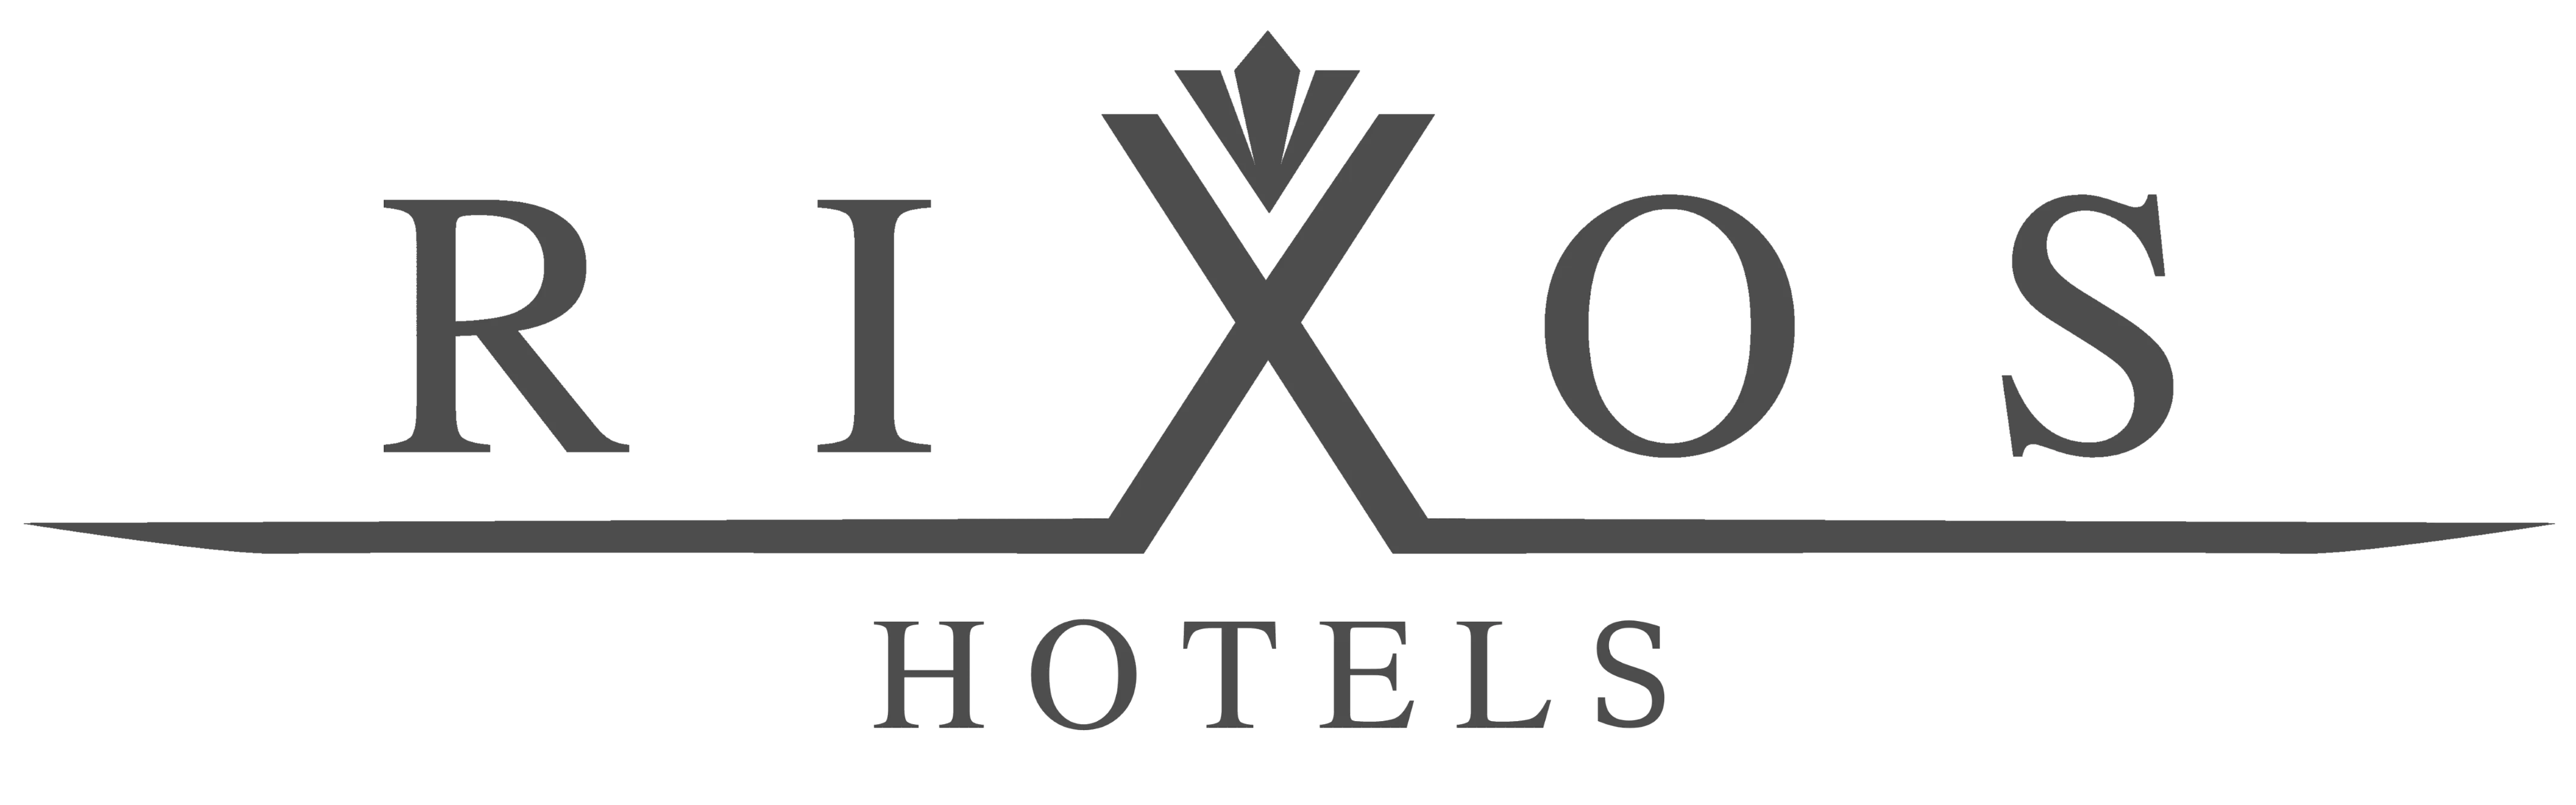 rixos-hotels